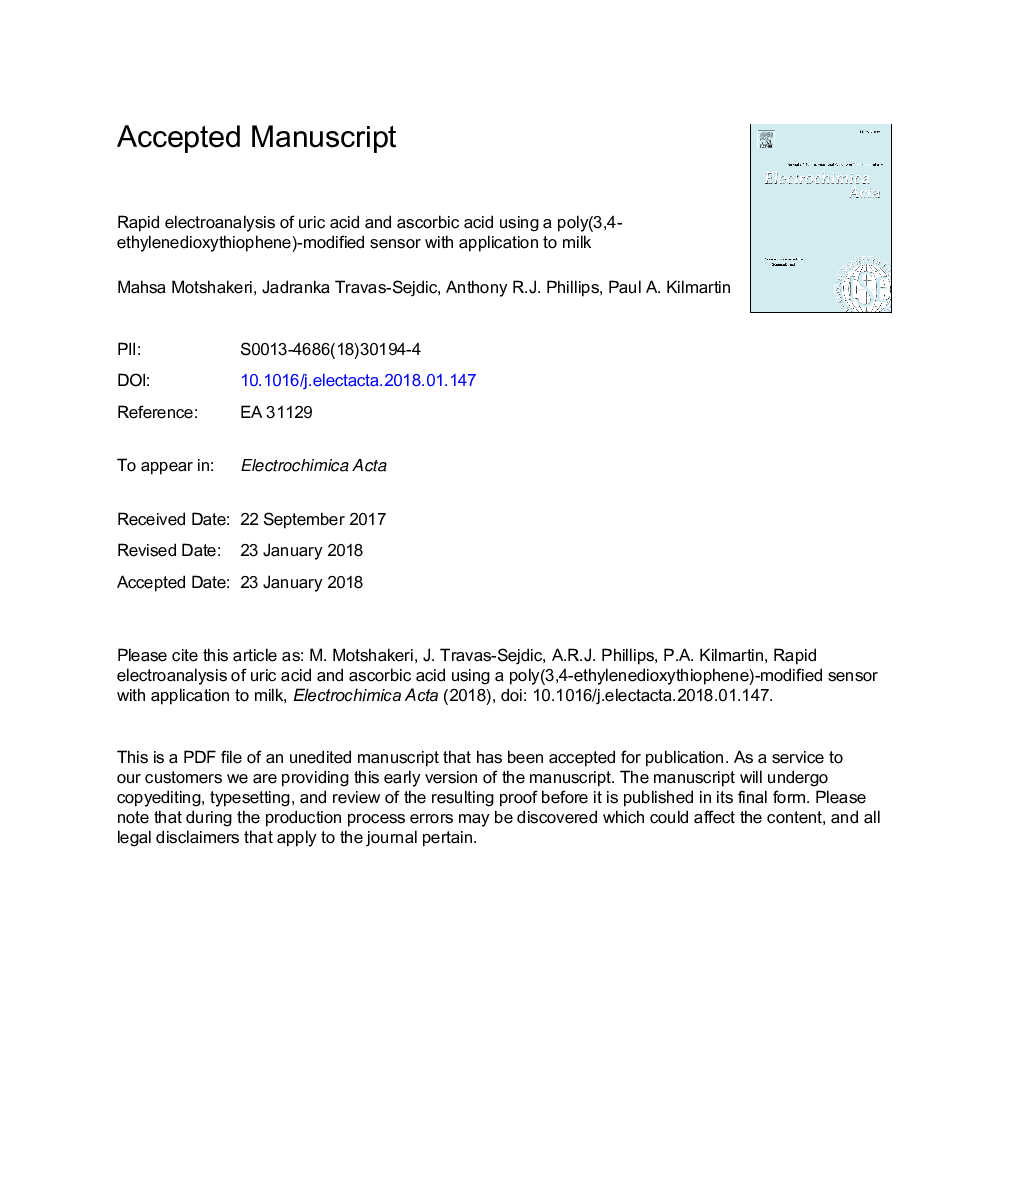 الکتروکنترلر سریع اسید اوریک و اسید آسکوربیک با استفاده از یک سنسور اصلاح پلی (3،4-اتیلن اکسید تیتیوفن) با استفاده از شیر 